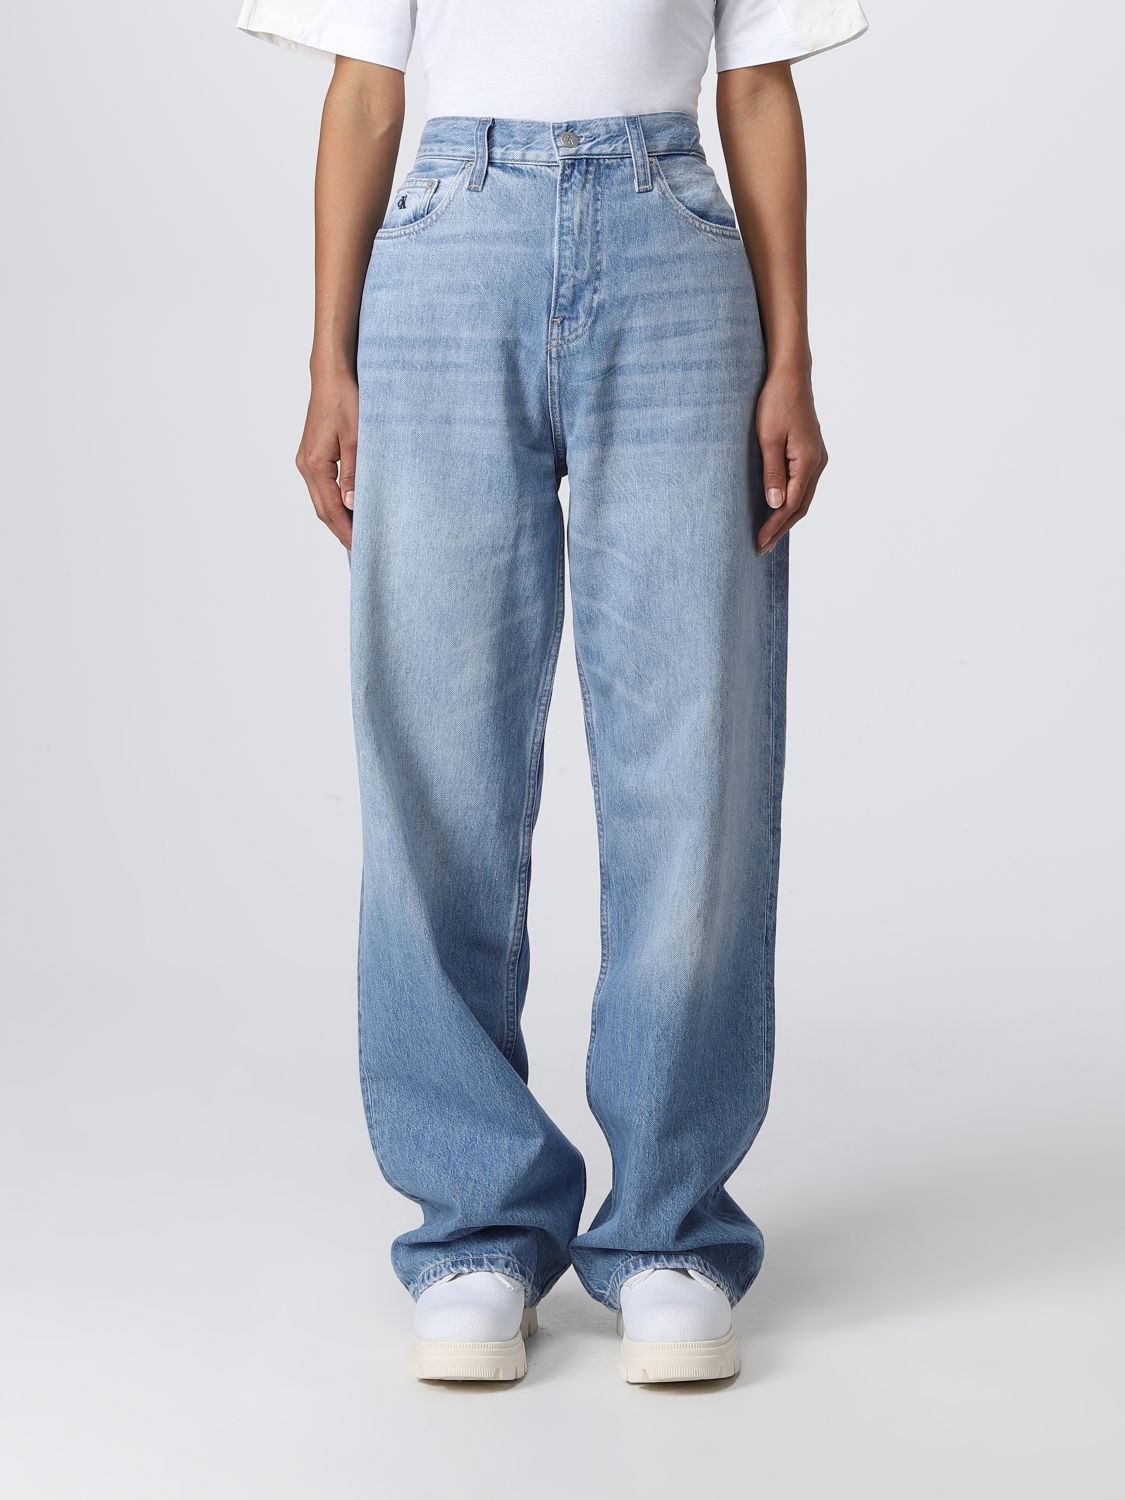 Calvin Klein Jeans(カルバンクラインジーンズ) レディース - カーディガン